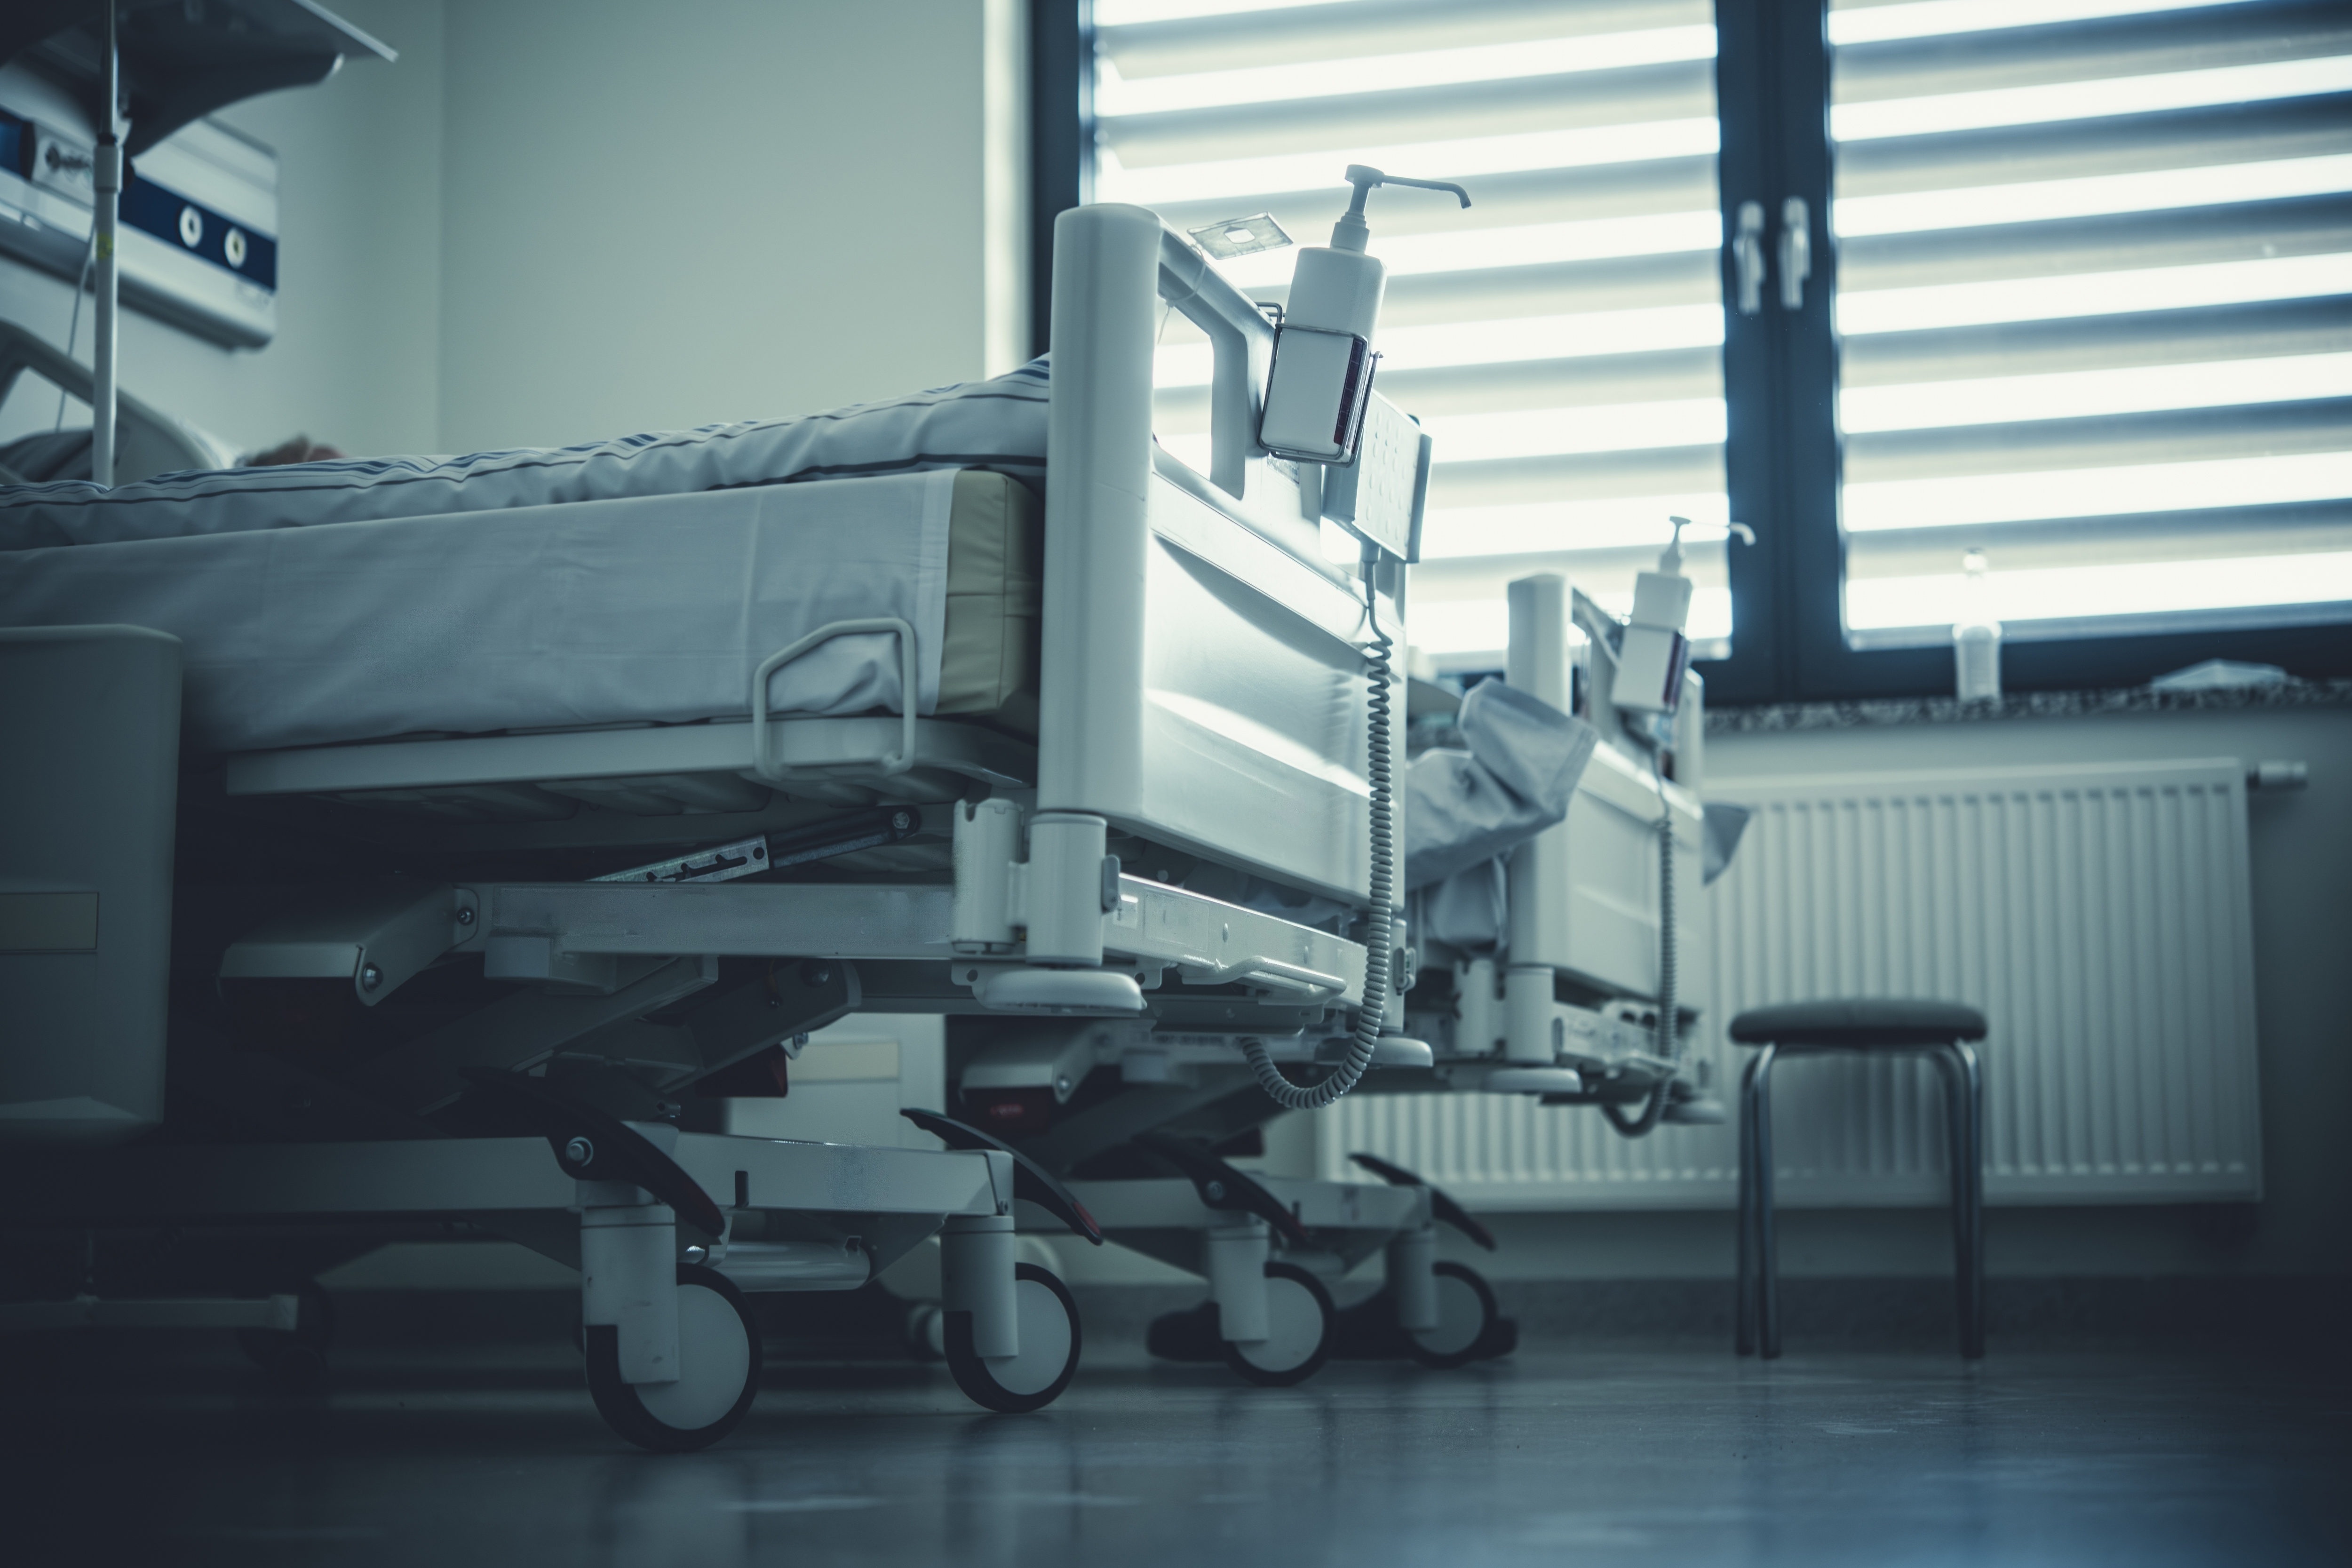 Camas de hospital en una habitación de hospital. | Fuente: Shutterstock